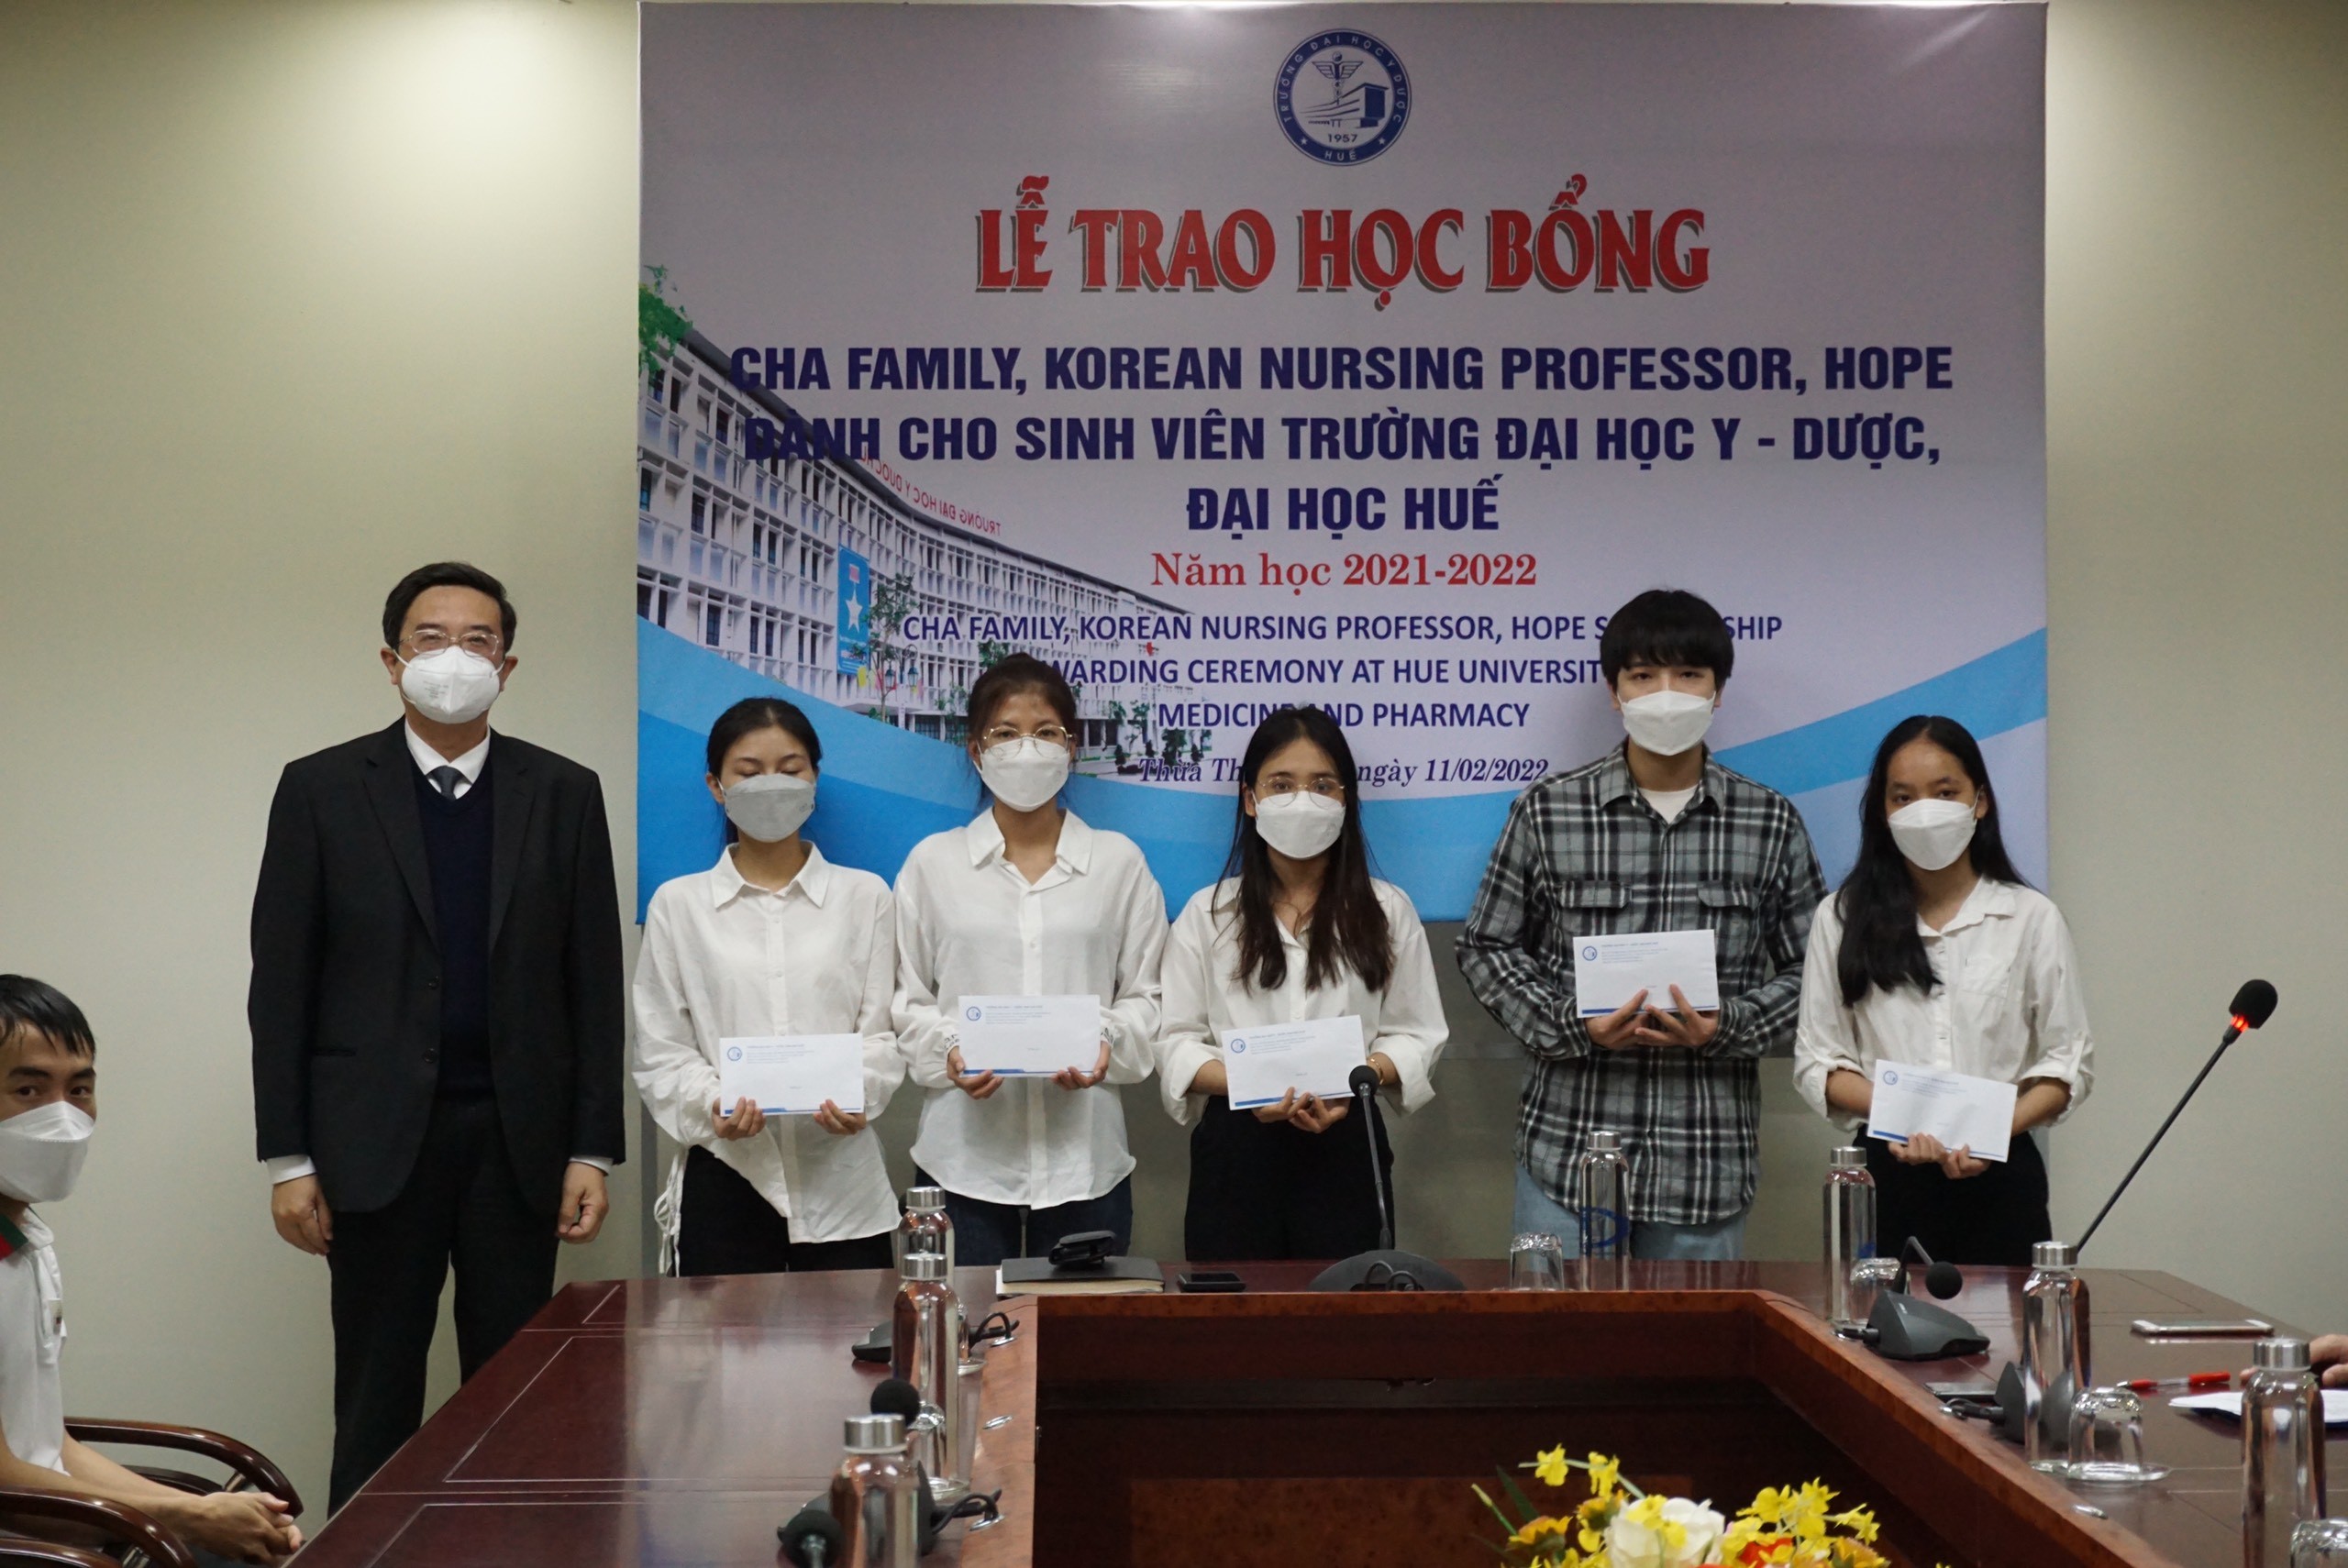 Trao học bổng Cha Family, Korean Nursing Professor, Hope cho 14 sinh viên Y khoa và Điều dưỡng